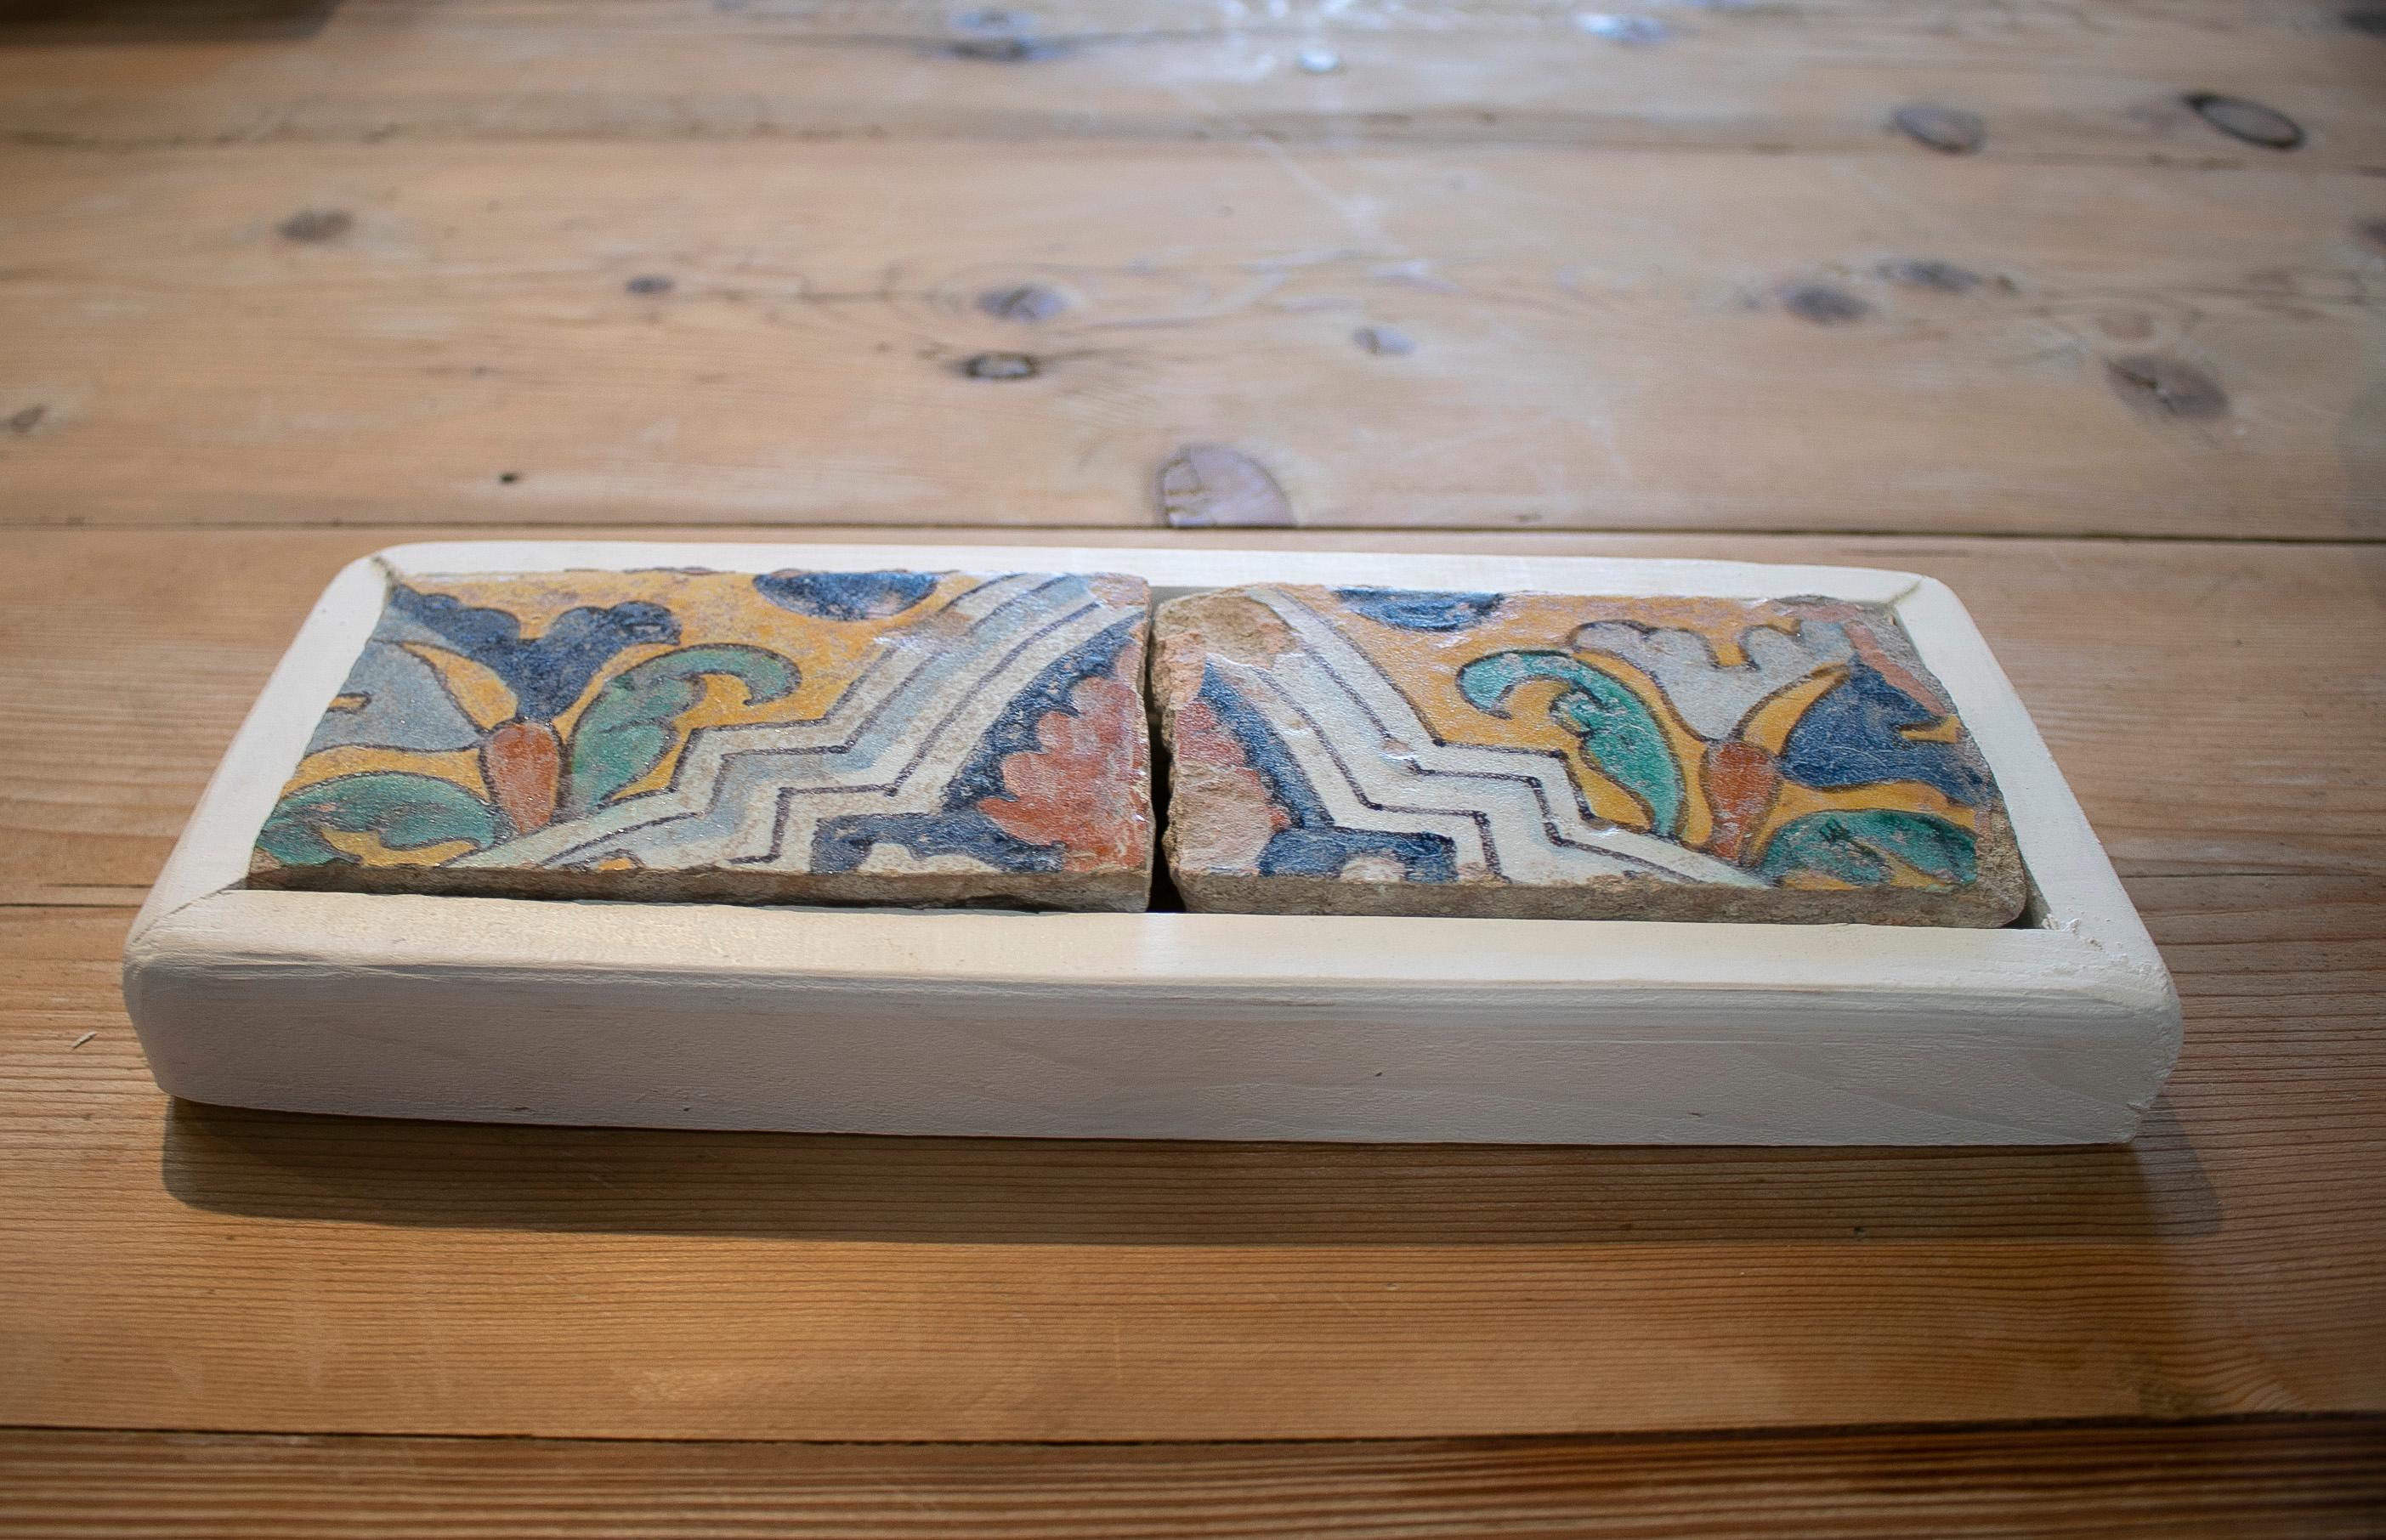 Antiguo juego de dos azulejos de cerámica esmaltada española del siglo XIX pintados a mano con marco blanco

Las dimensiones no incluyen el marco.